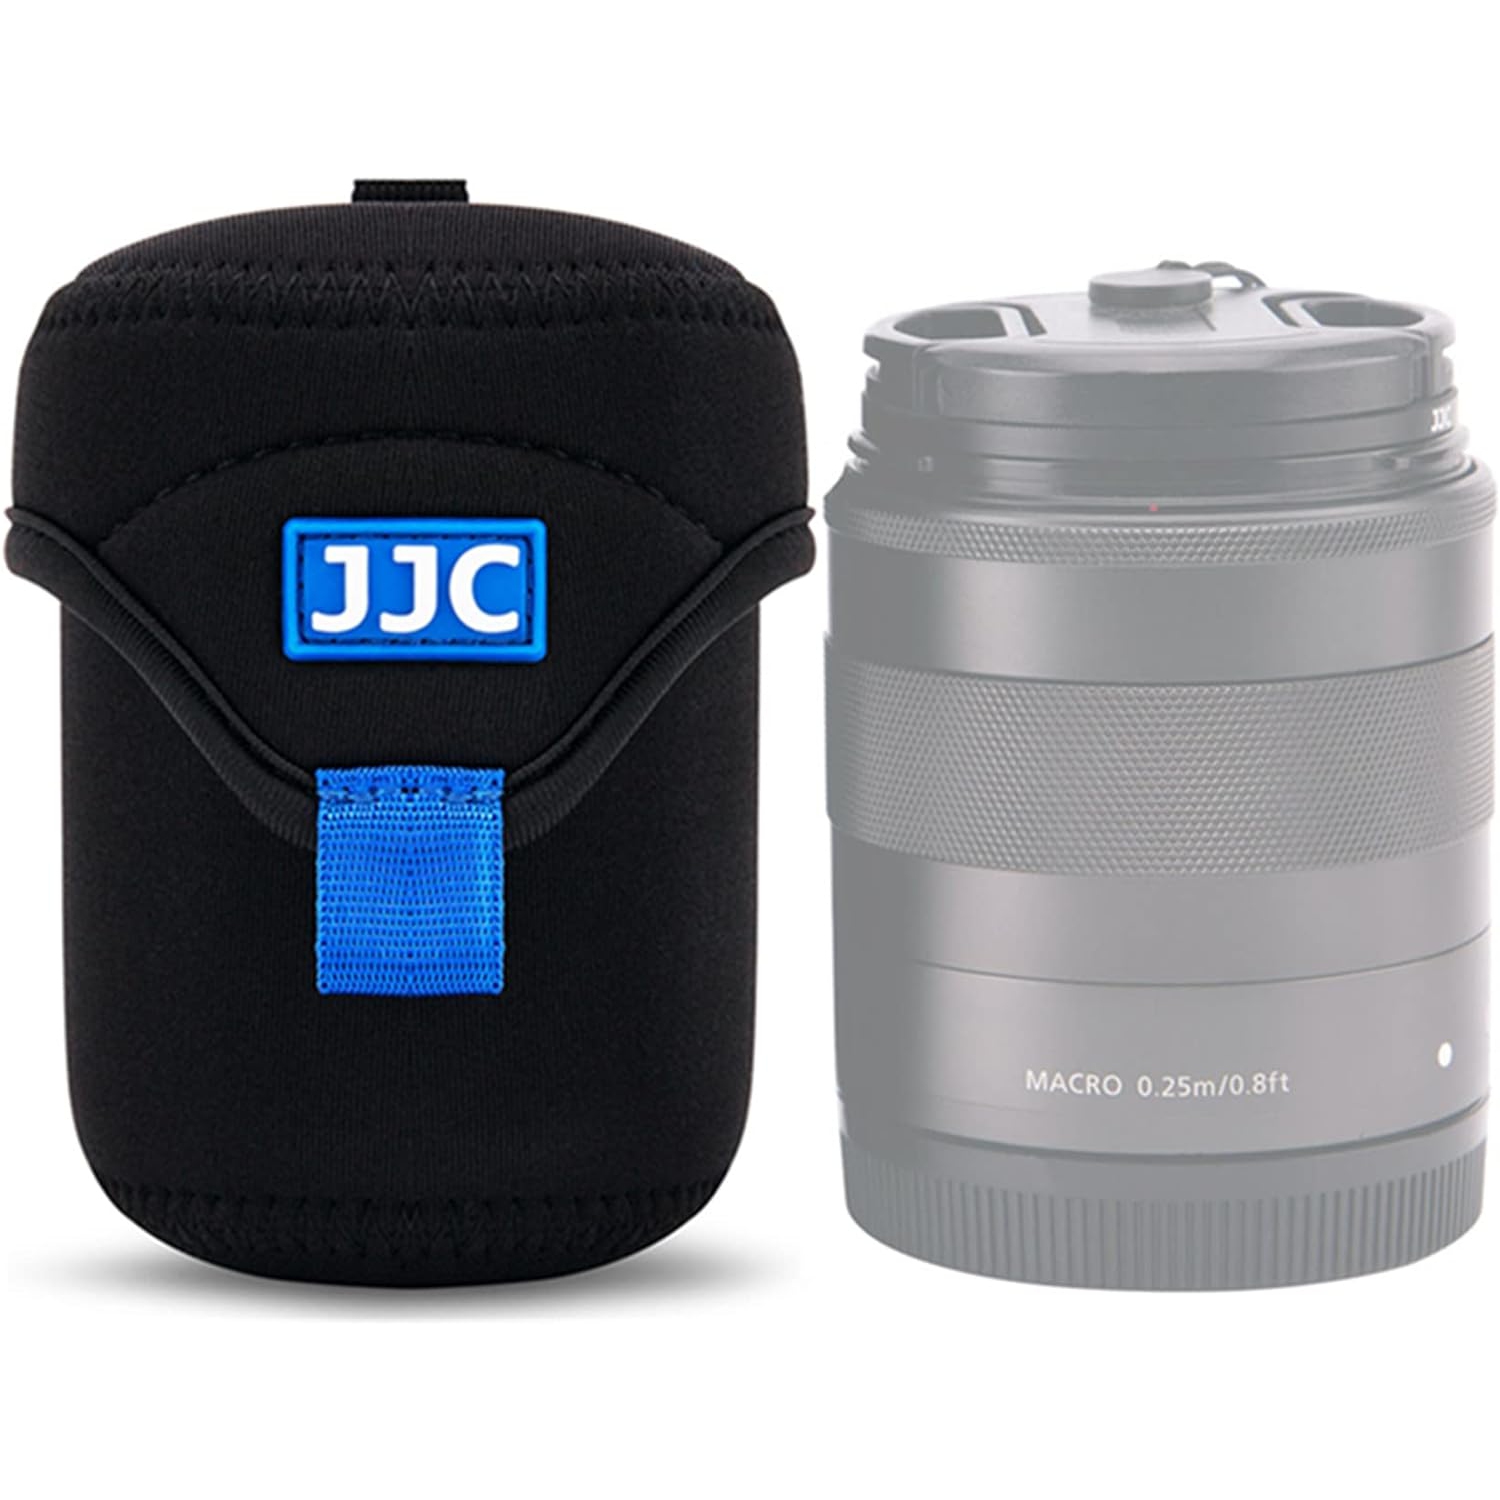 JJC – étui de protection pour caméra, pochette pour enregistrement